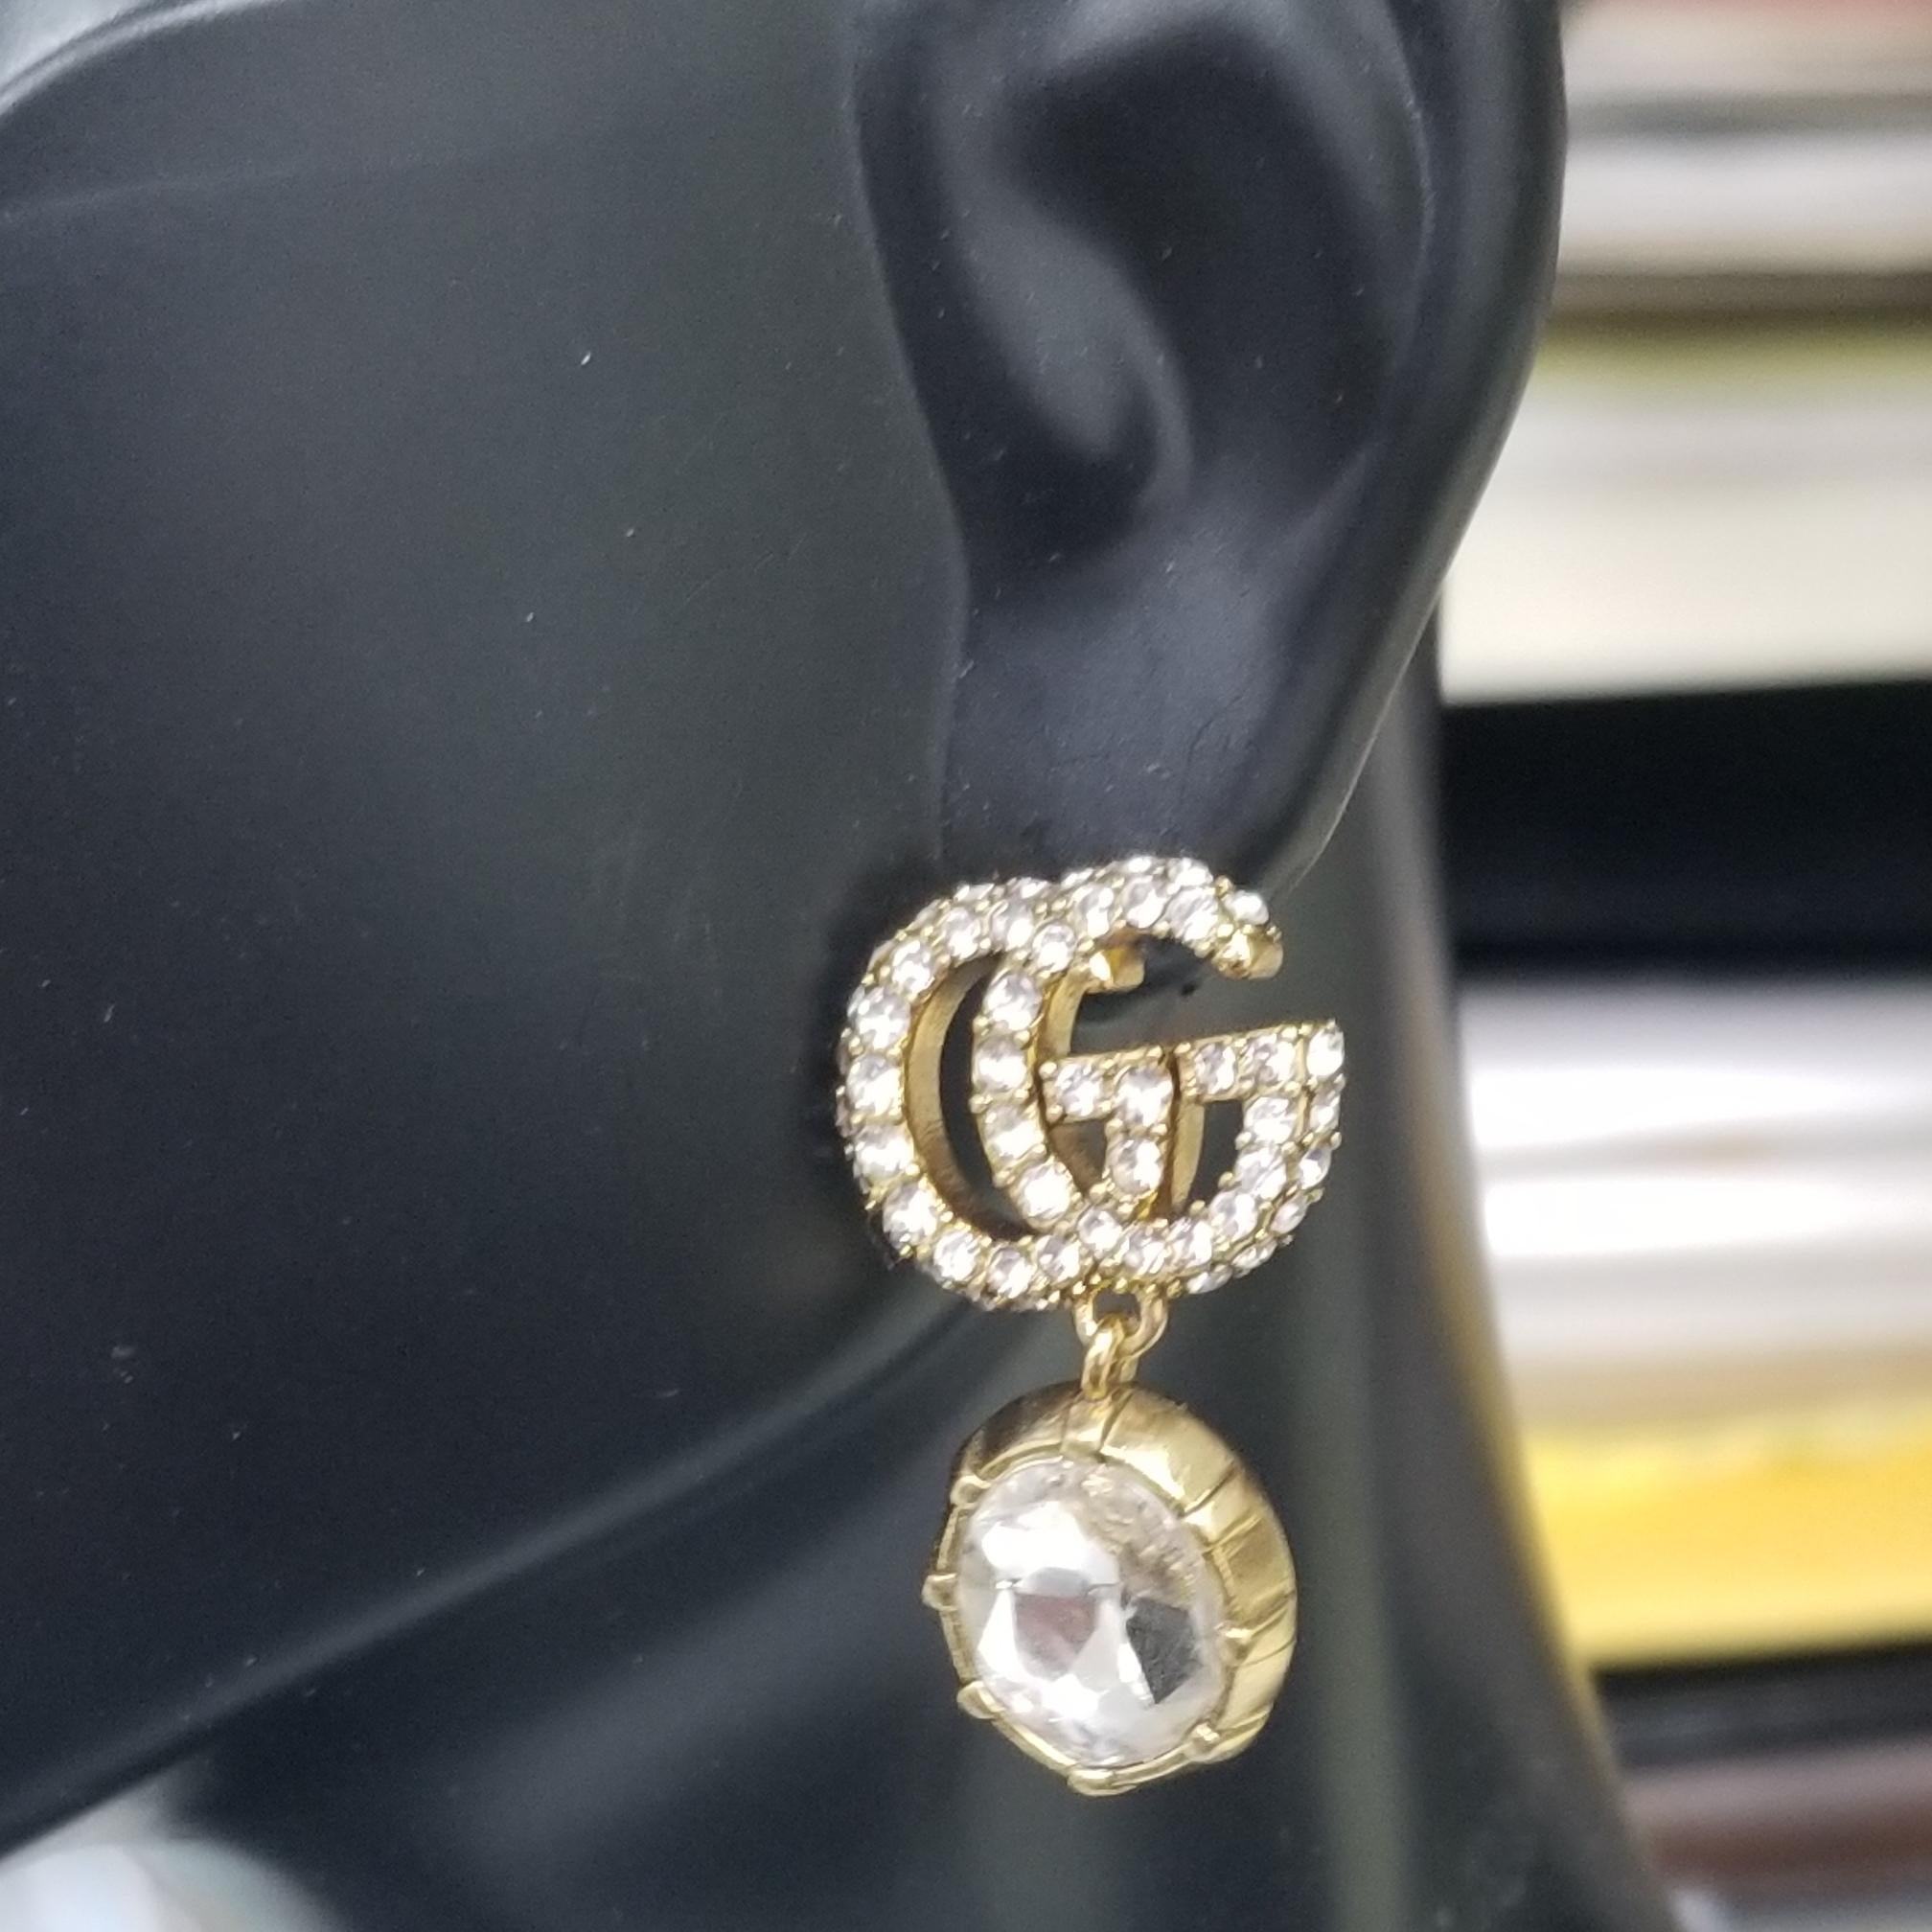 gucci double g earrings